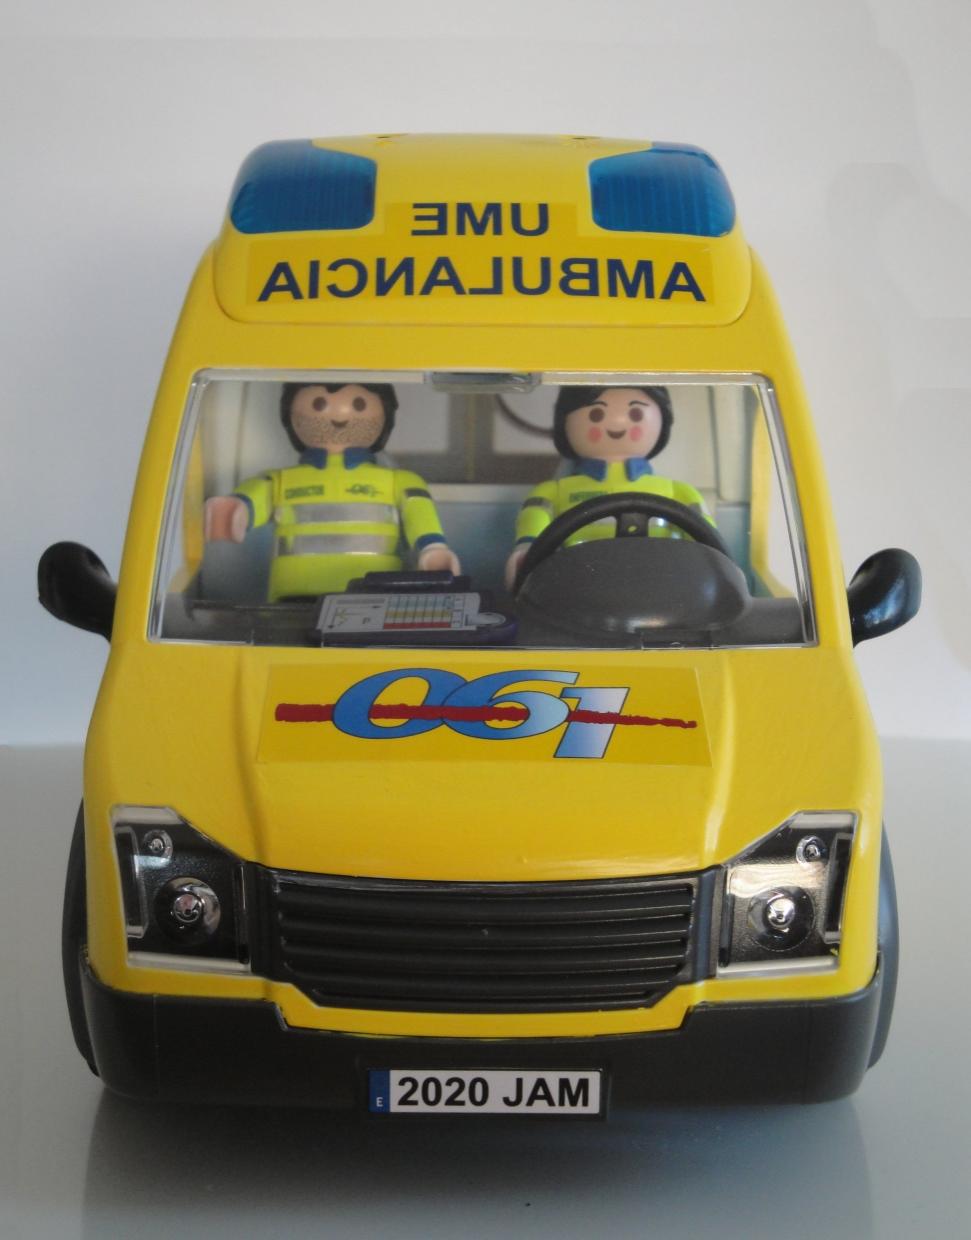 Ambulancia Playmobil personalizada con los distintivos del Servicio Murciano de Salud SMS